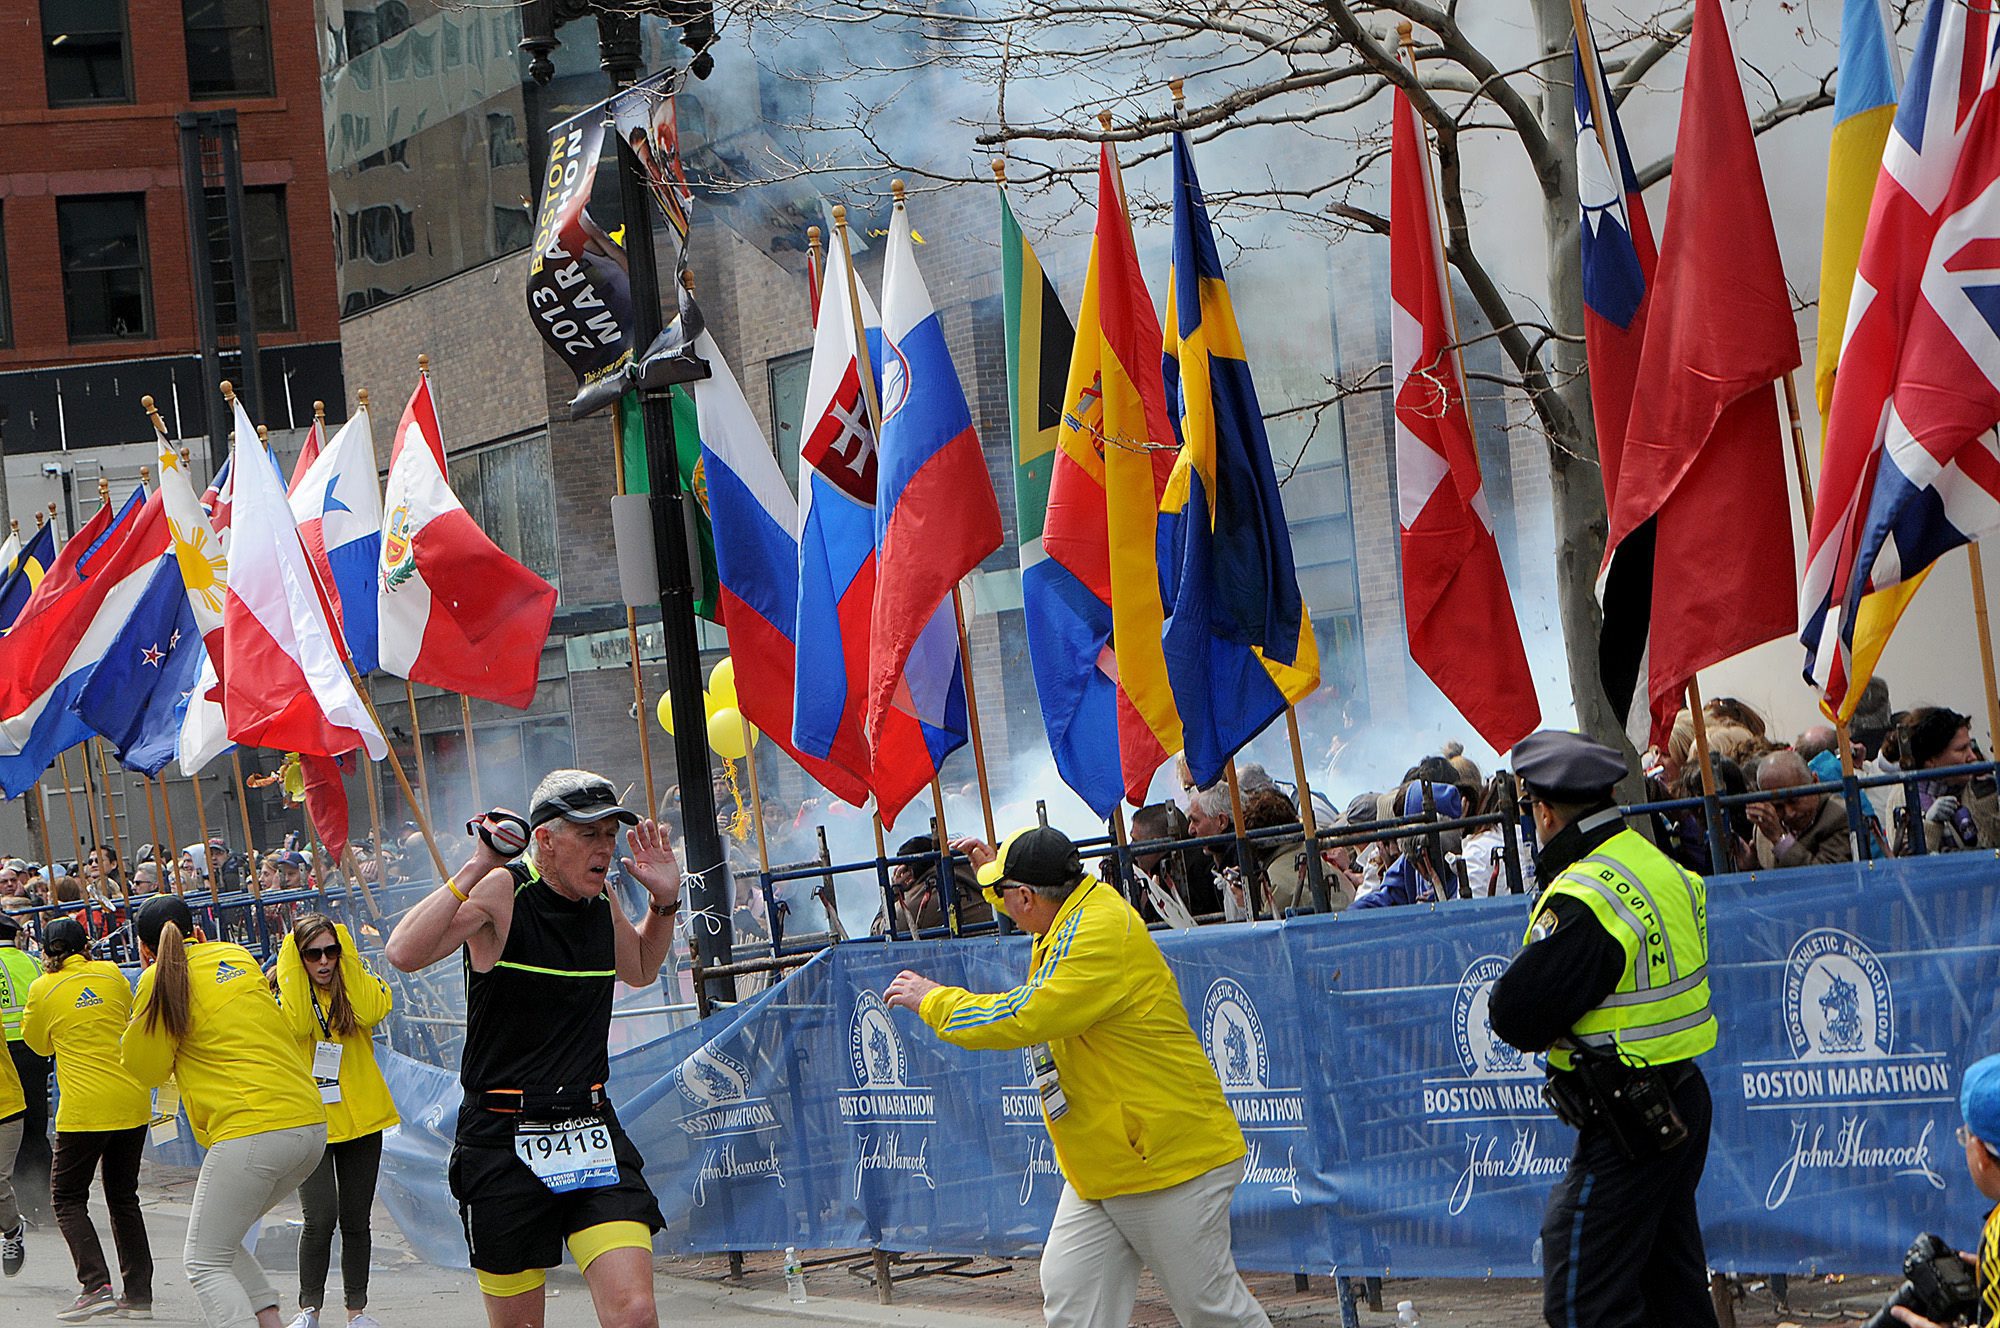 Атентатън бе извършен на 15 април на финиша на маратона в Бостън